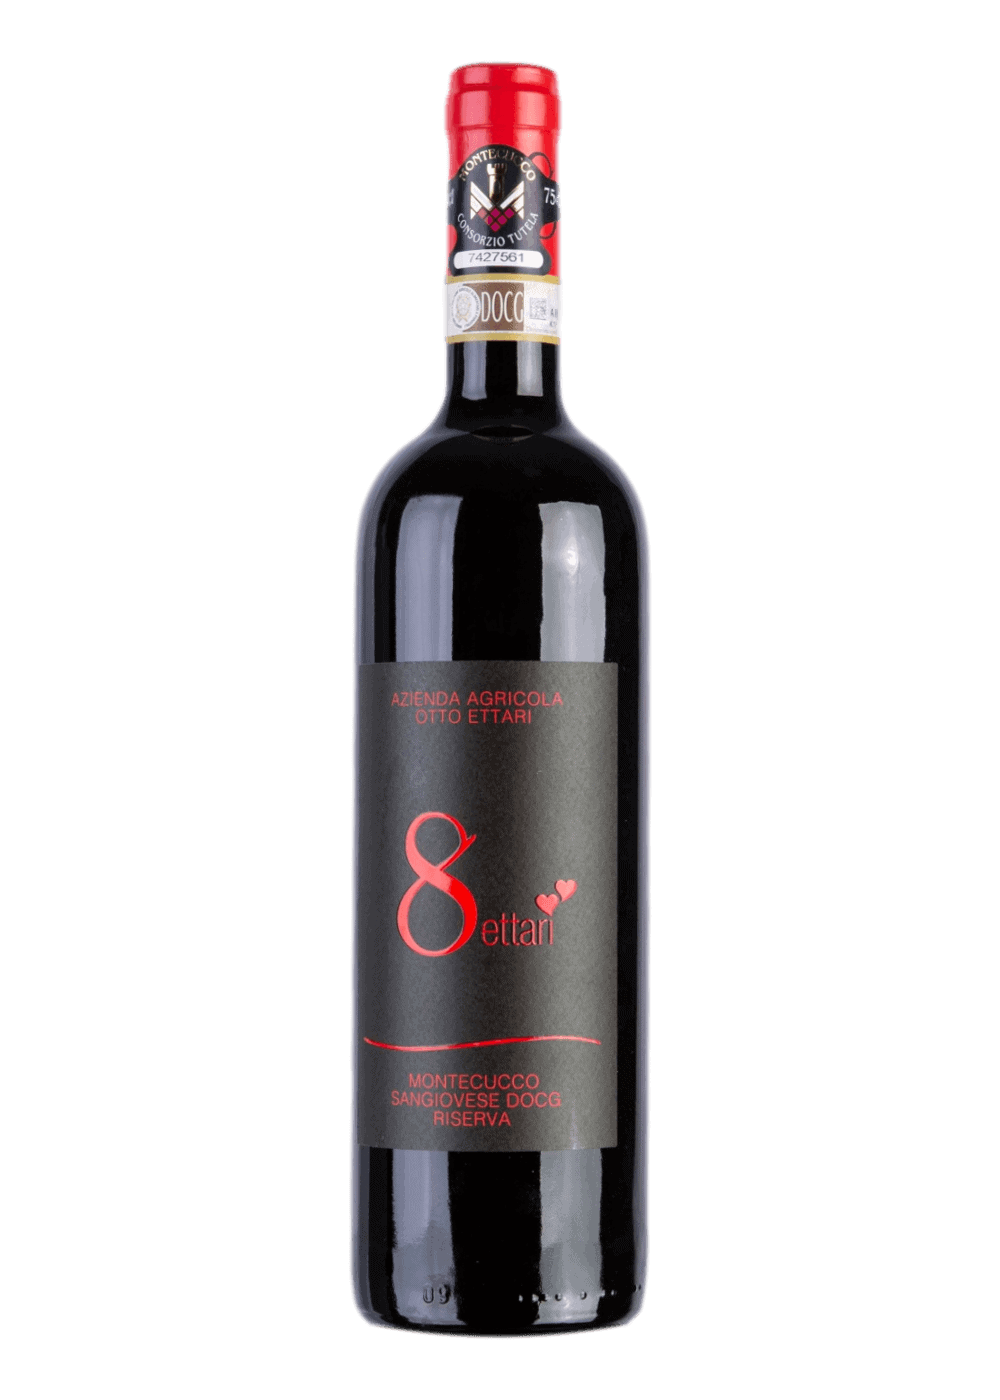 Weinflasche Montecucco Sangiovese Riserva DOCG von Otto Ettari